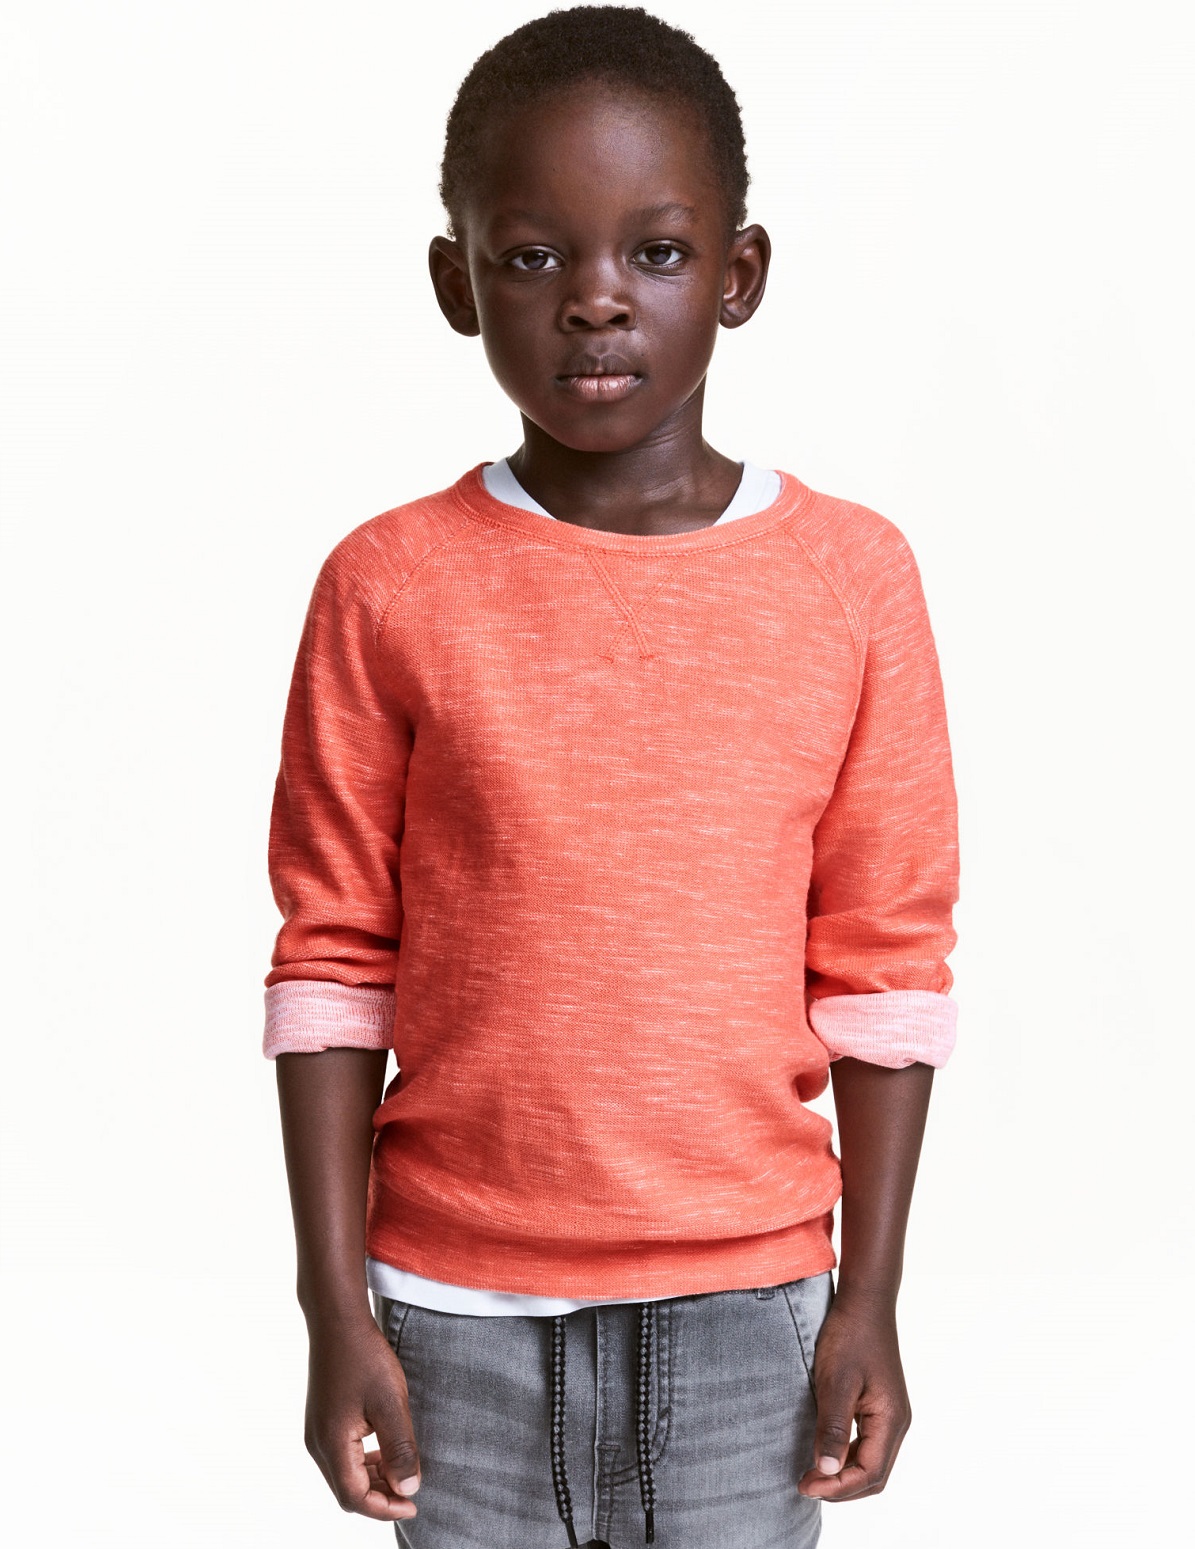 H&M y sus novedades de niño para vestir